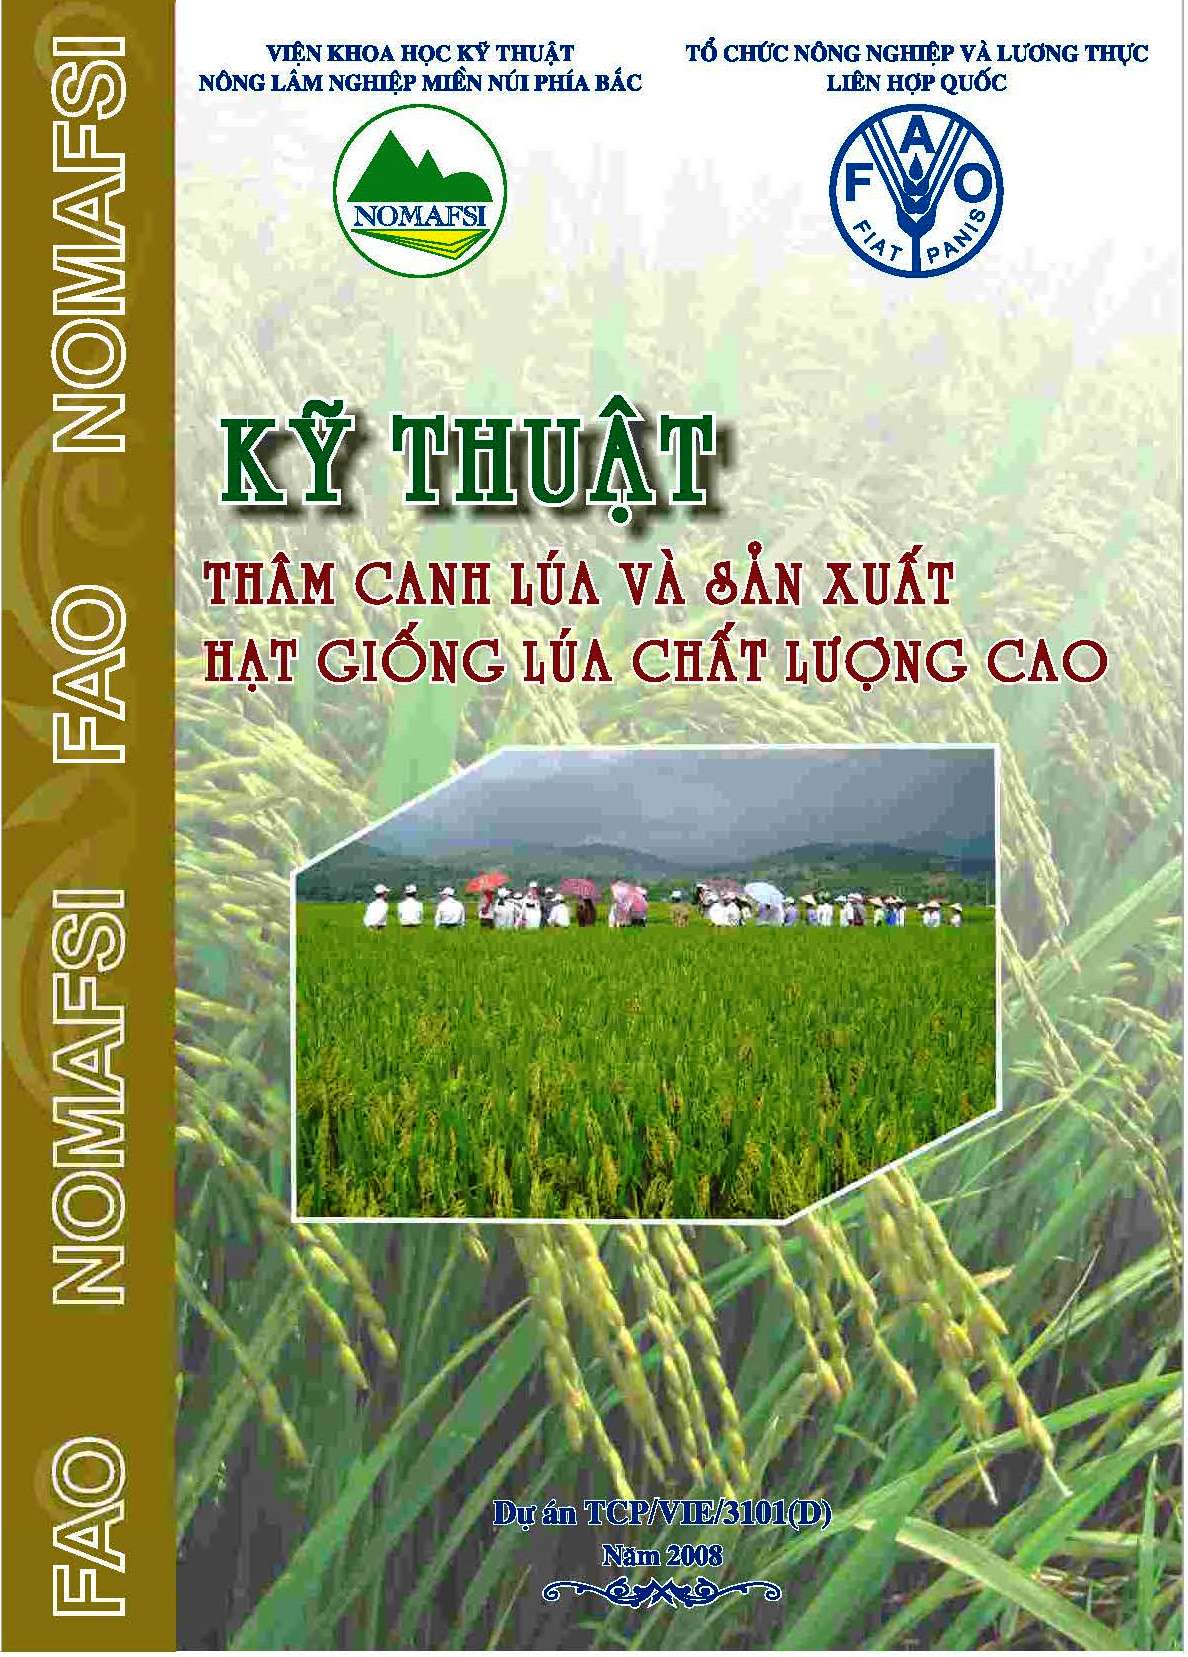 Dự án FAO TCP/VIE/3101 (D) Quy trình thâm canh lúa và sản xuất hạt giống chất lượng cao